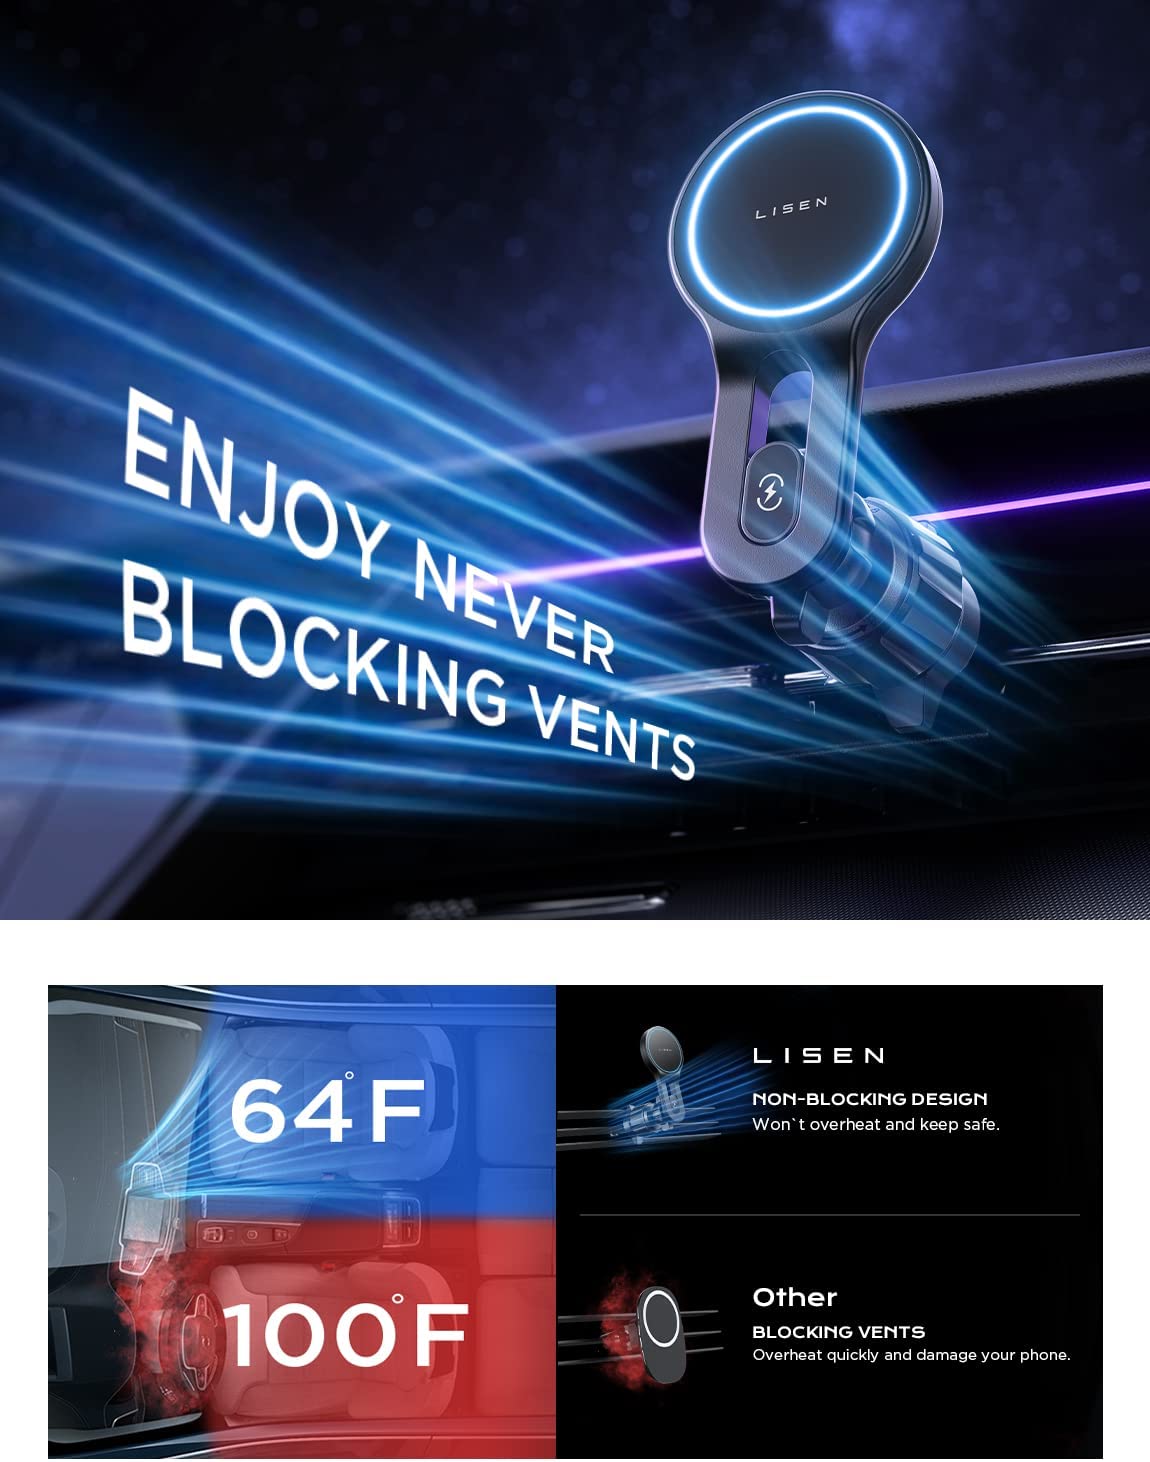  LISEN Phone Holders for Your Car [Enjoy Never Blocking